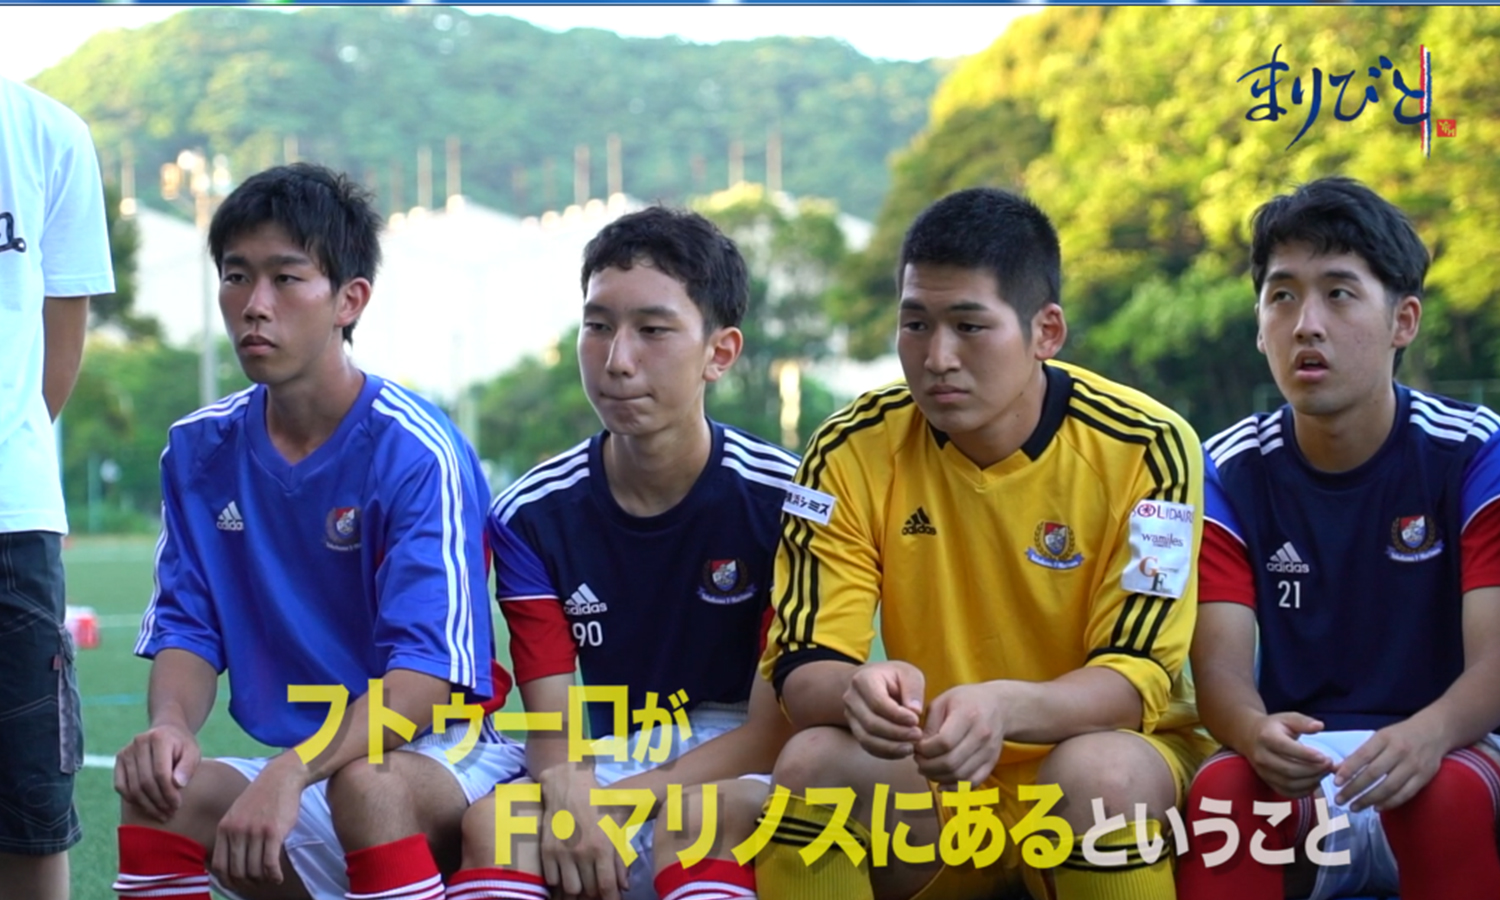 動画 横浜f マリノスが知的障がい者サッカーチームを運営する理由を知っていますか まりびと 知的障がい者サッカーチーム フトゥーロ スポーツナビ 横浜f マリノス公式ちゃんねる